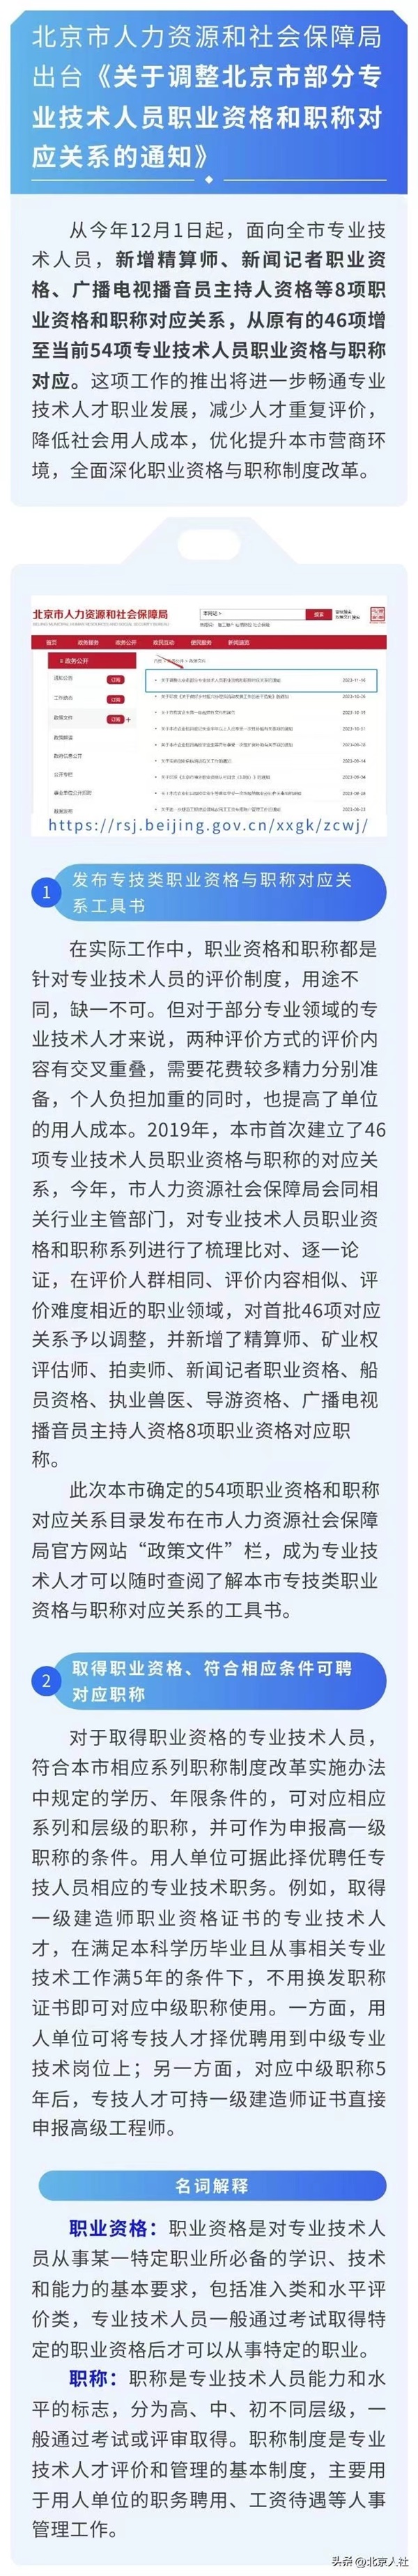 一图读懂《关于调整北京市部分专业技术人员职业资格和职称对应关系的通知》